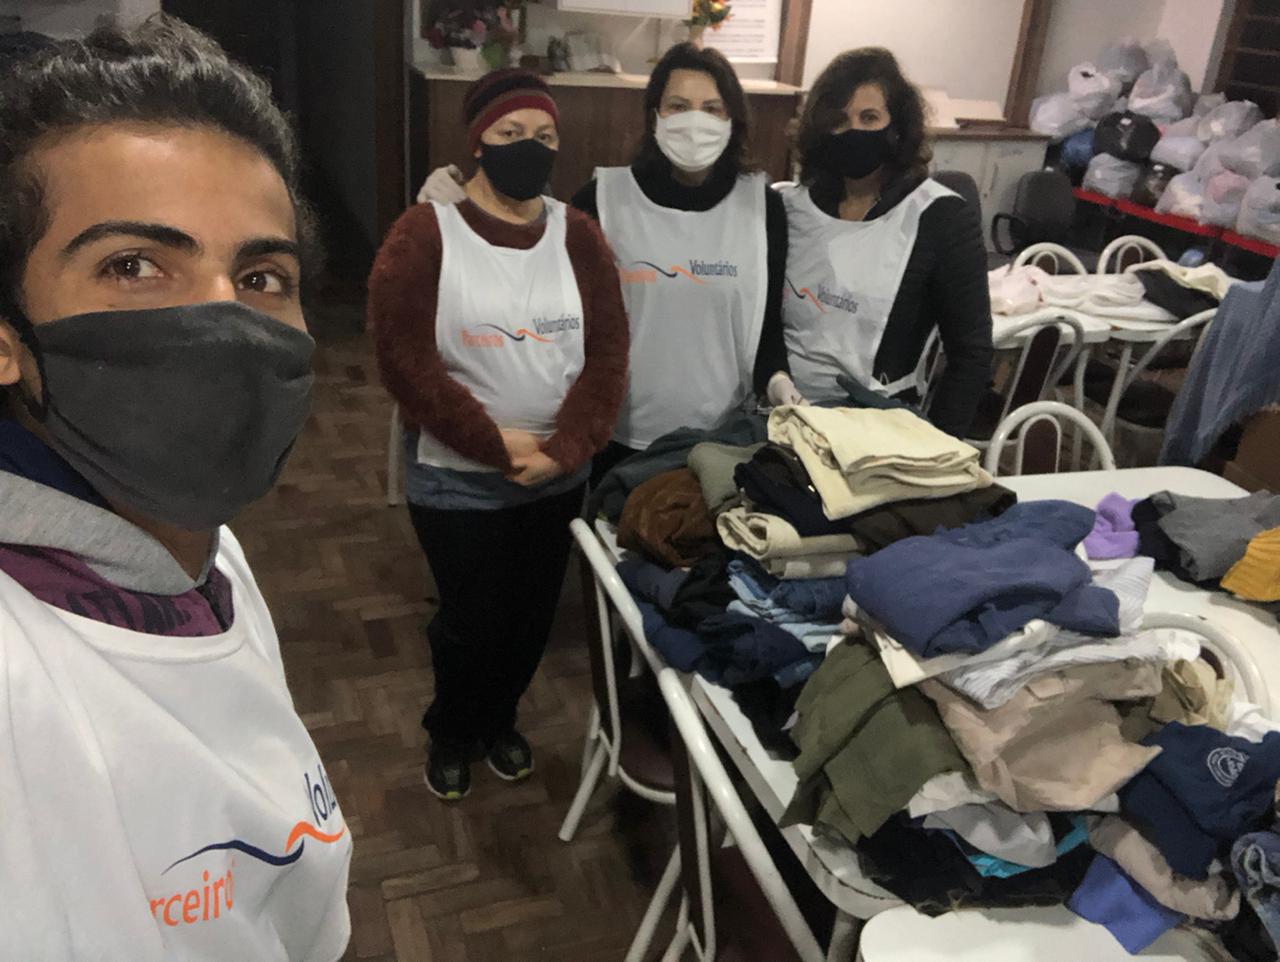 Parceiros Voluntários retoma circuito de solidariedade incentivando engajamento social em Bento